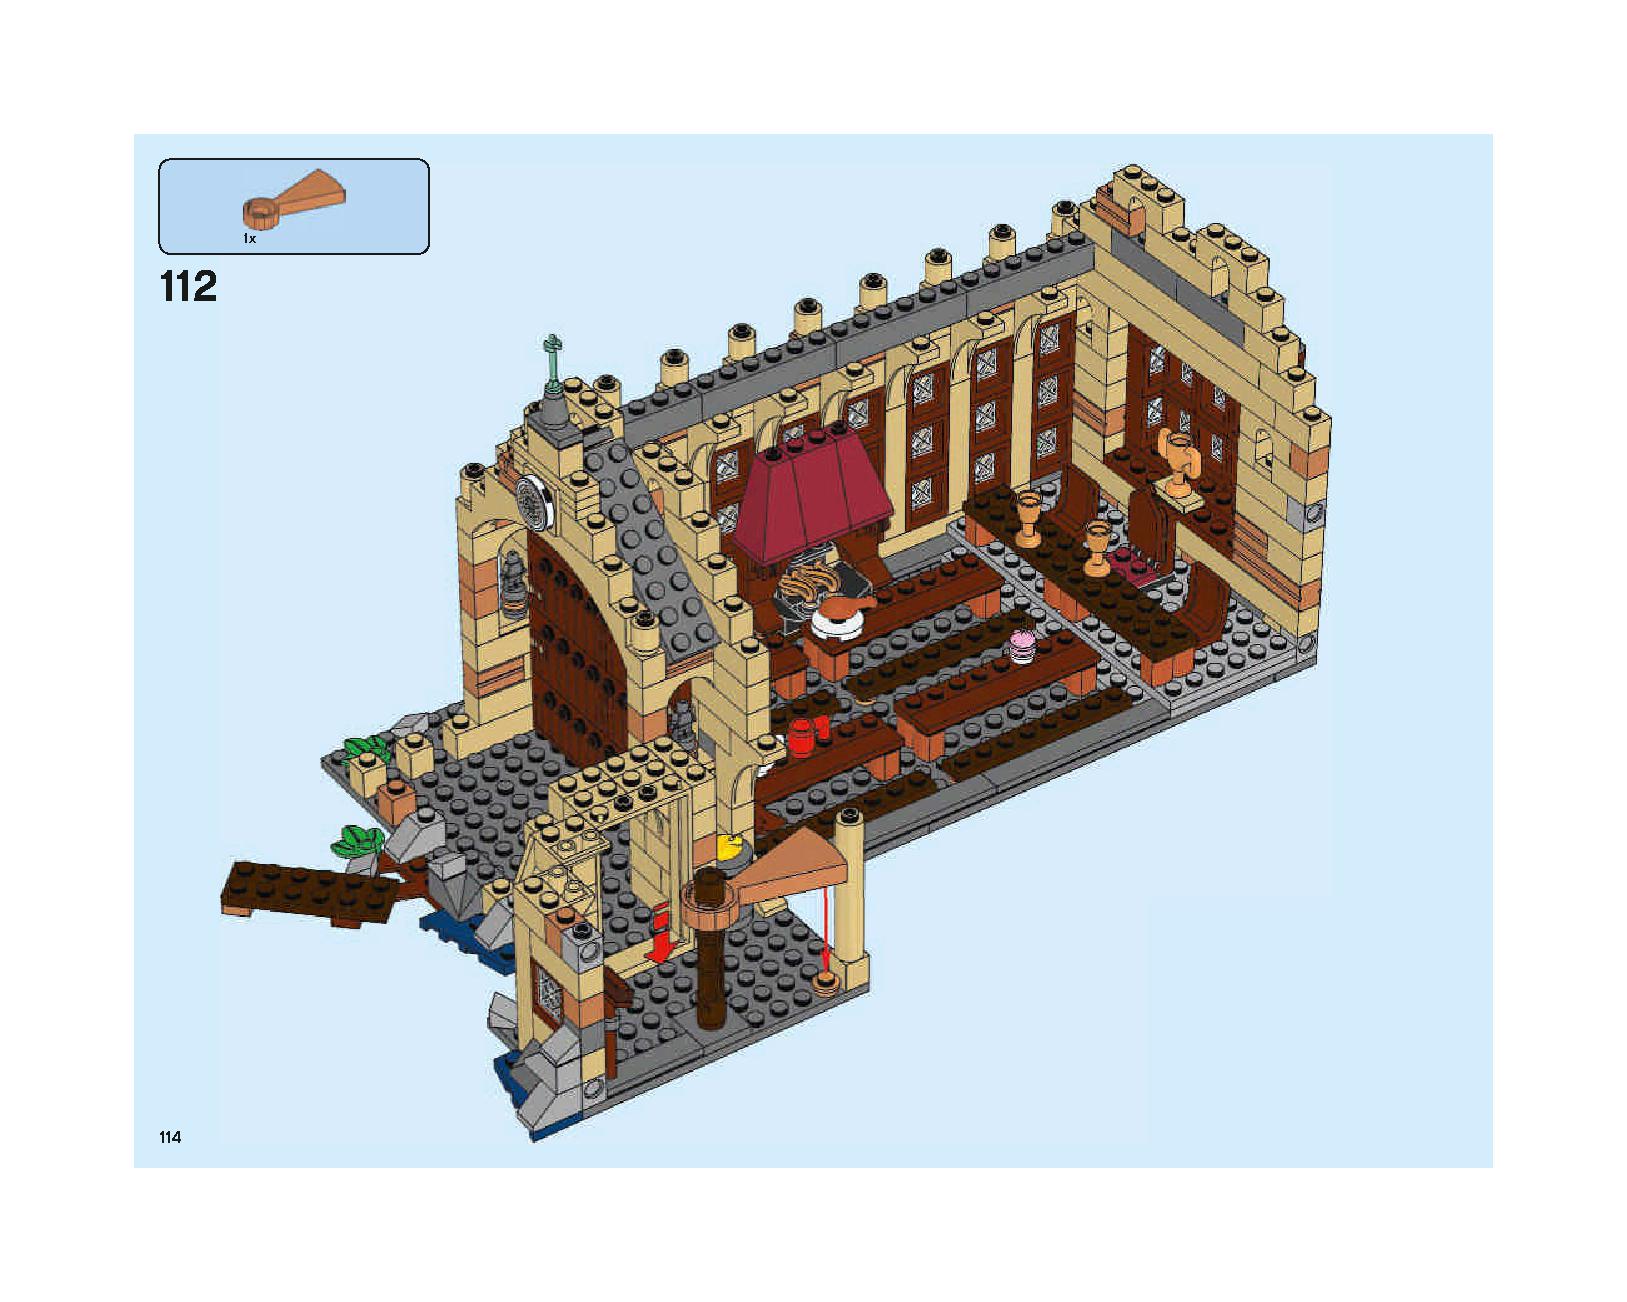 ホグワーツの大広間 75954 レゴの商品情報 レゴの説明書・組立方法 114 page